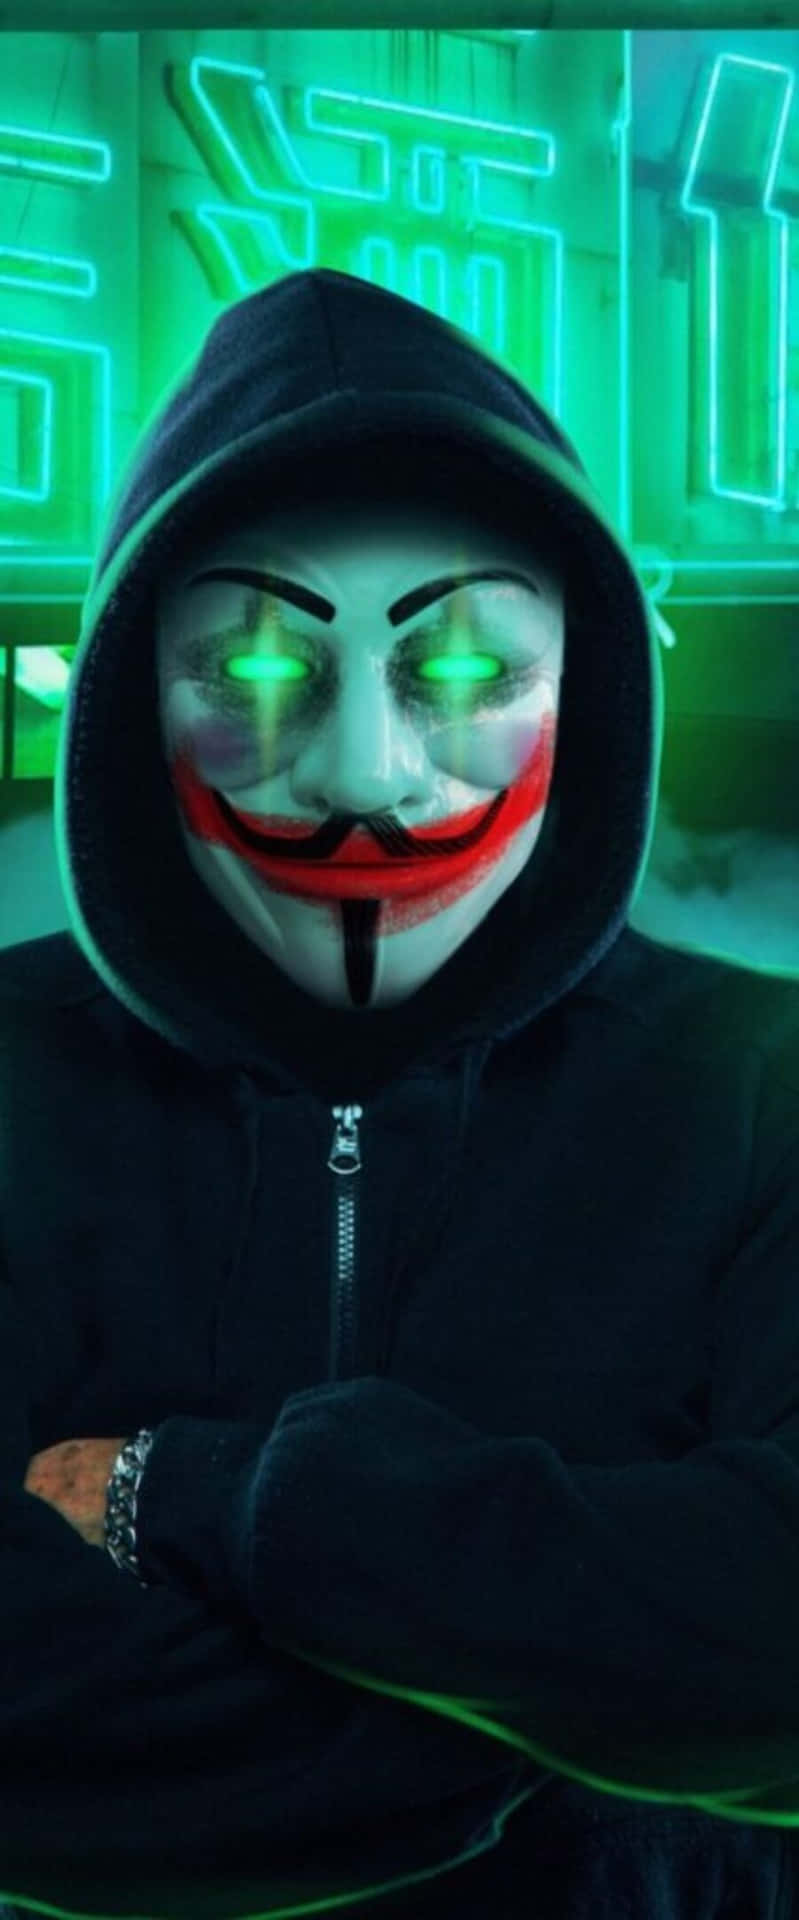 Neon Glow Hacker Mask Wallpaper